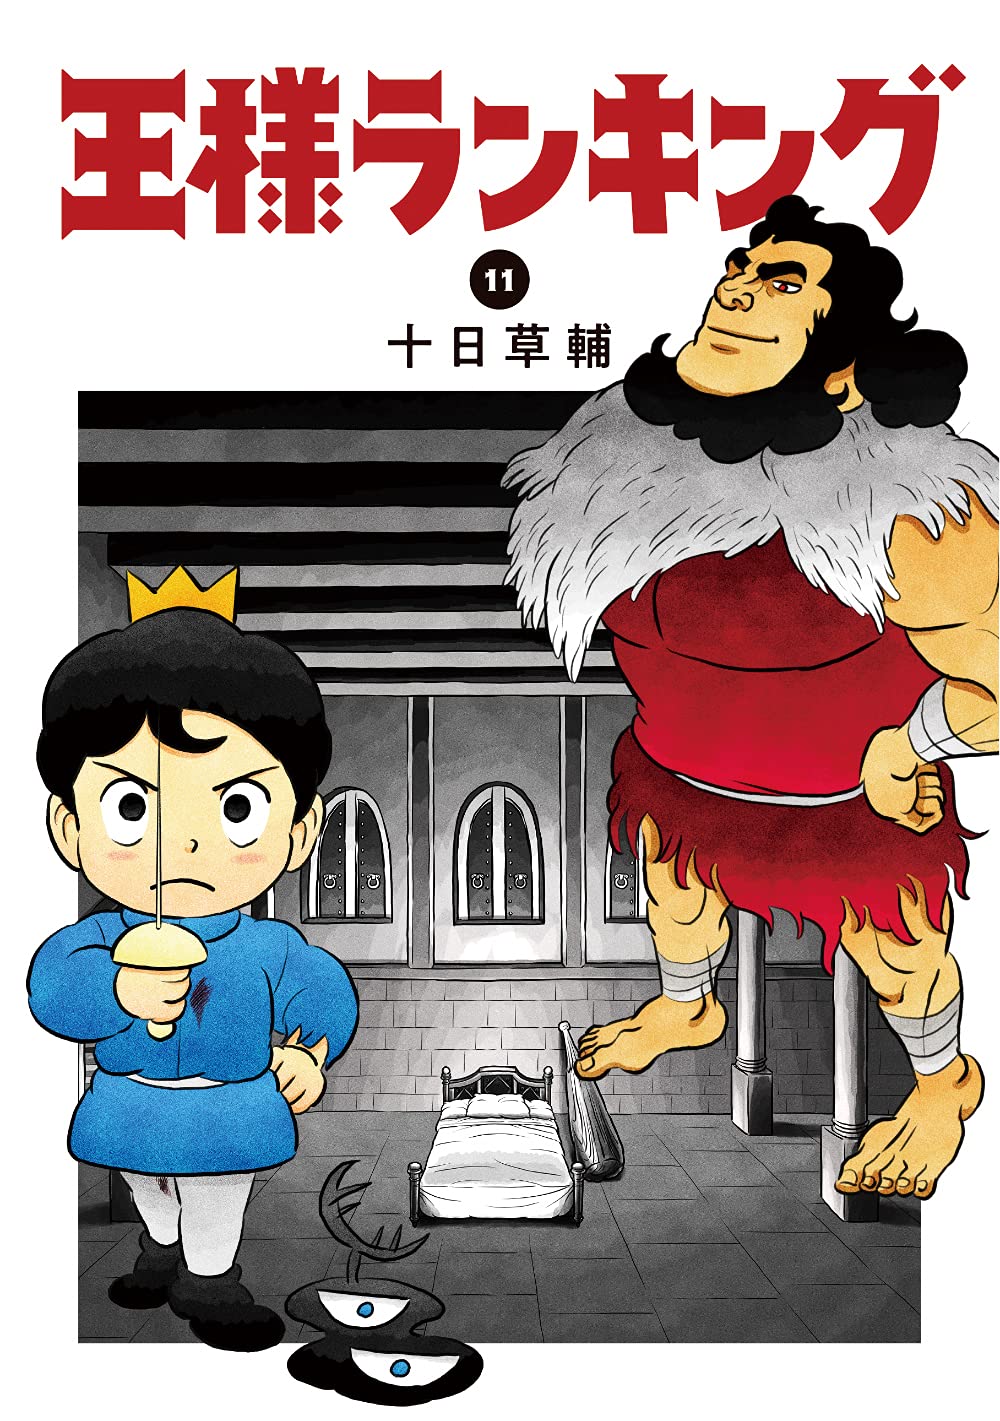 Anime de Ousama Ranking está a ser um sucesso na China